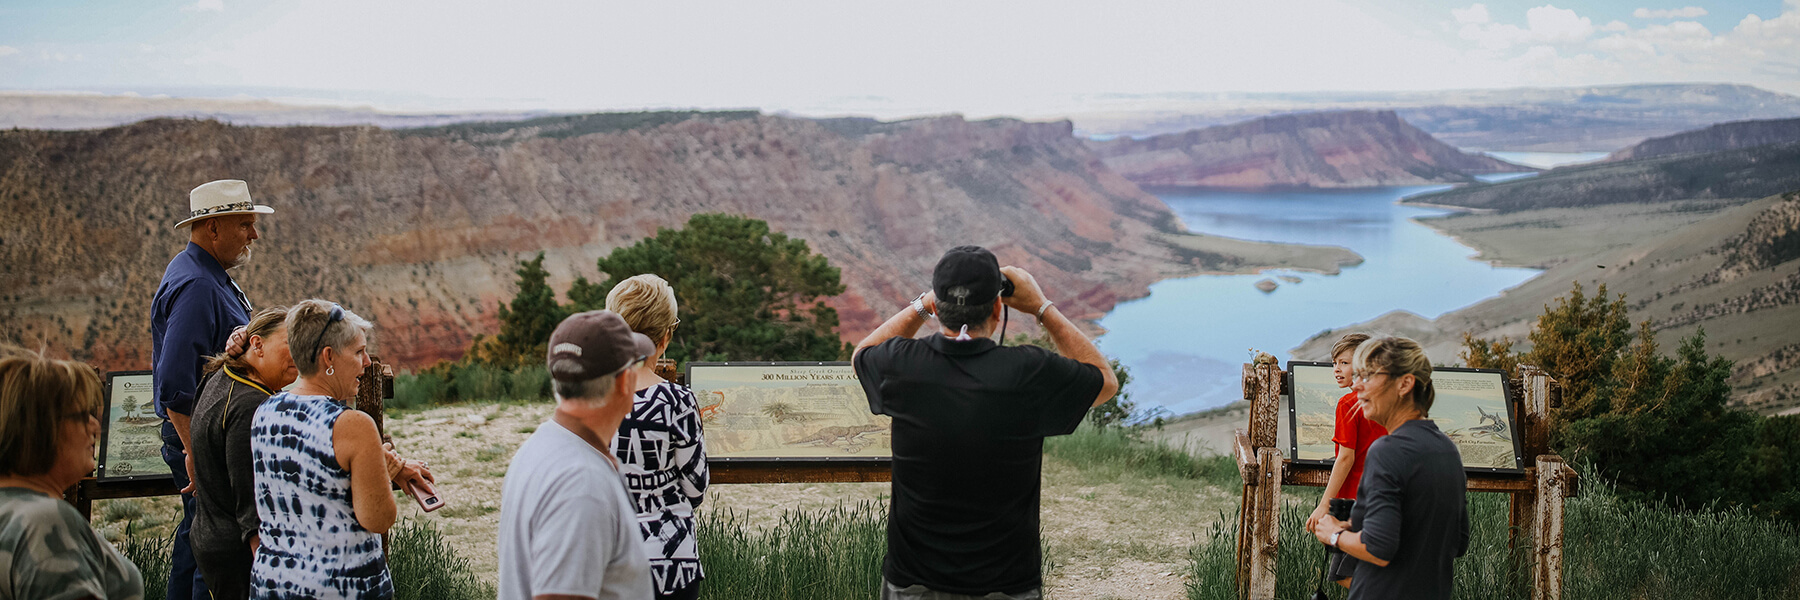 游客在火烈峡国家娱乐区欣赏风景